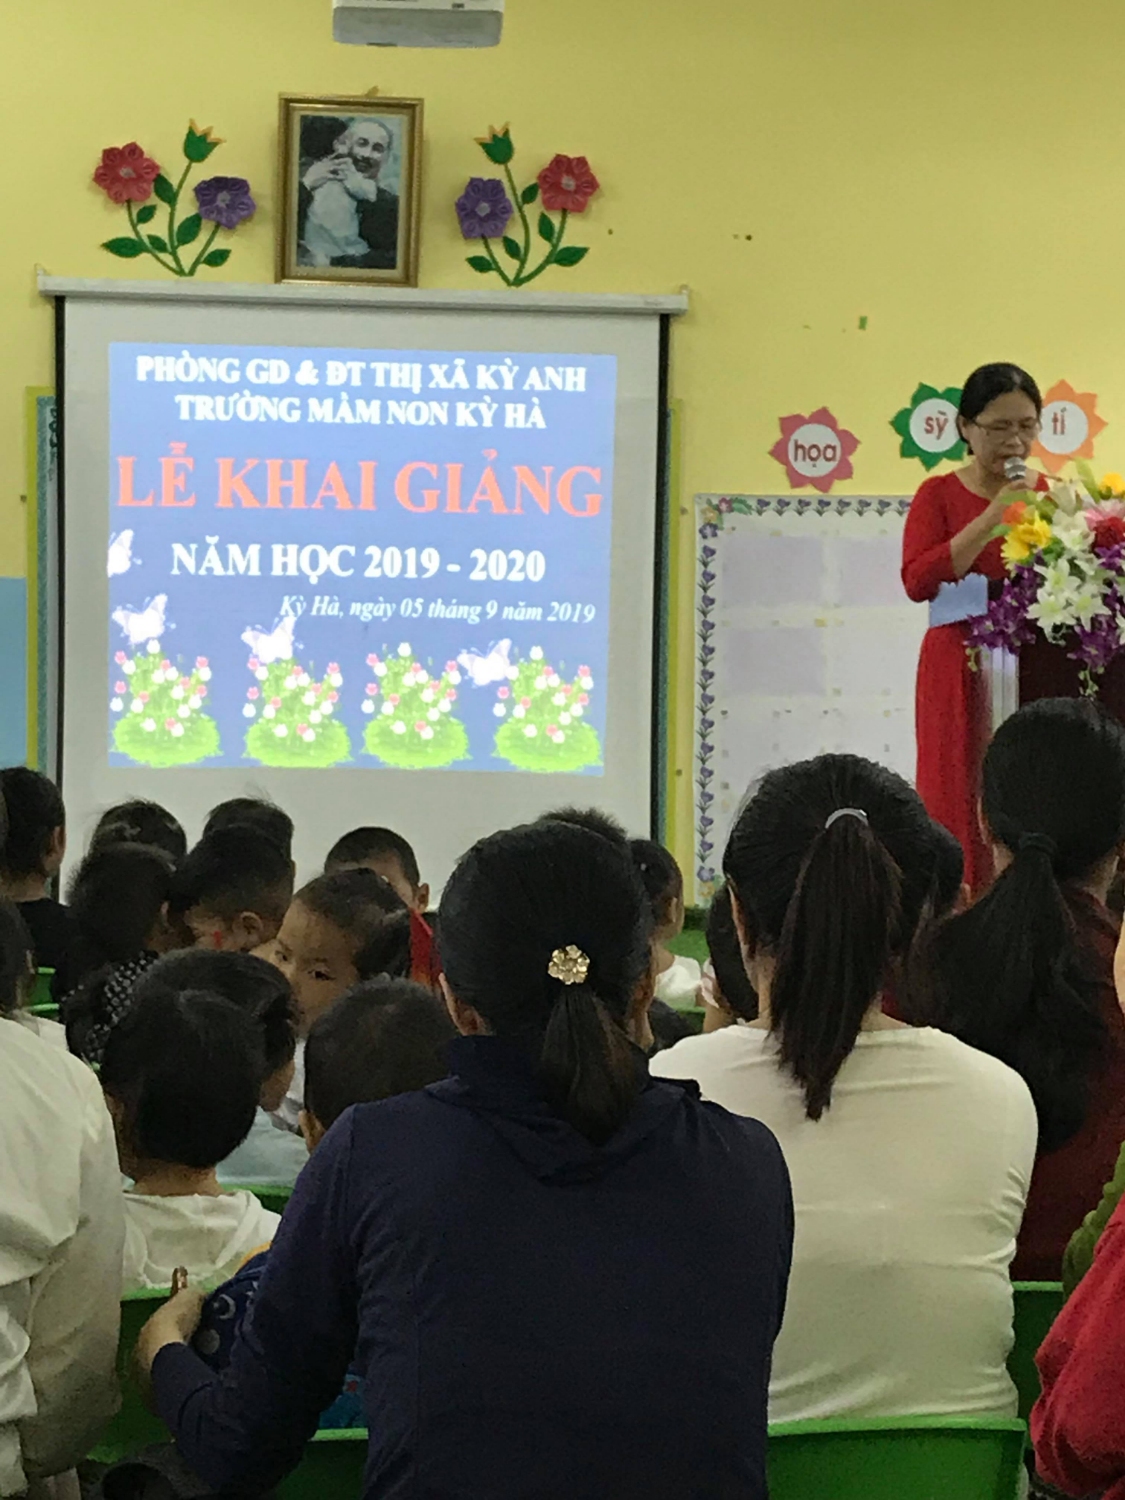 Trường mầm non Kỳ Hà tổ chức lễ khai giảng năm học 2019-2020